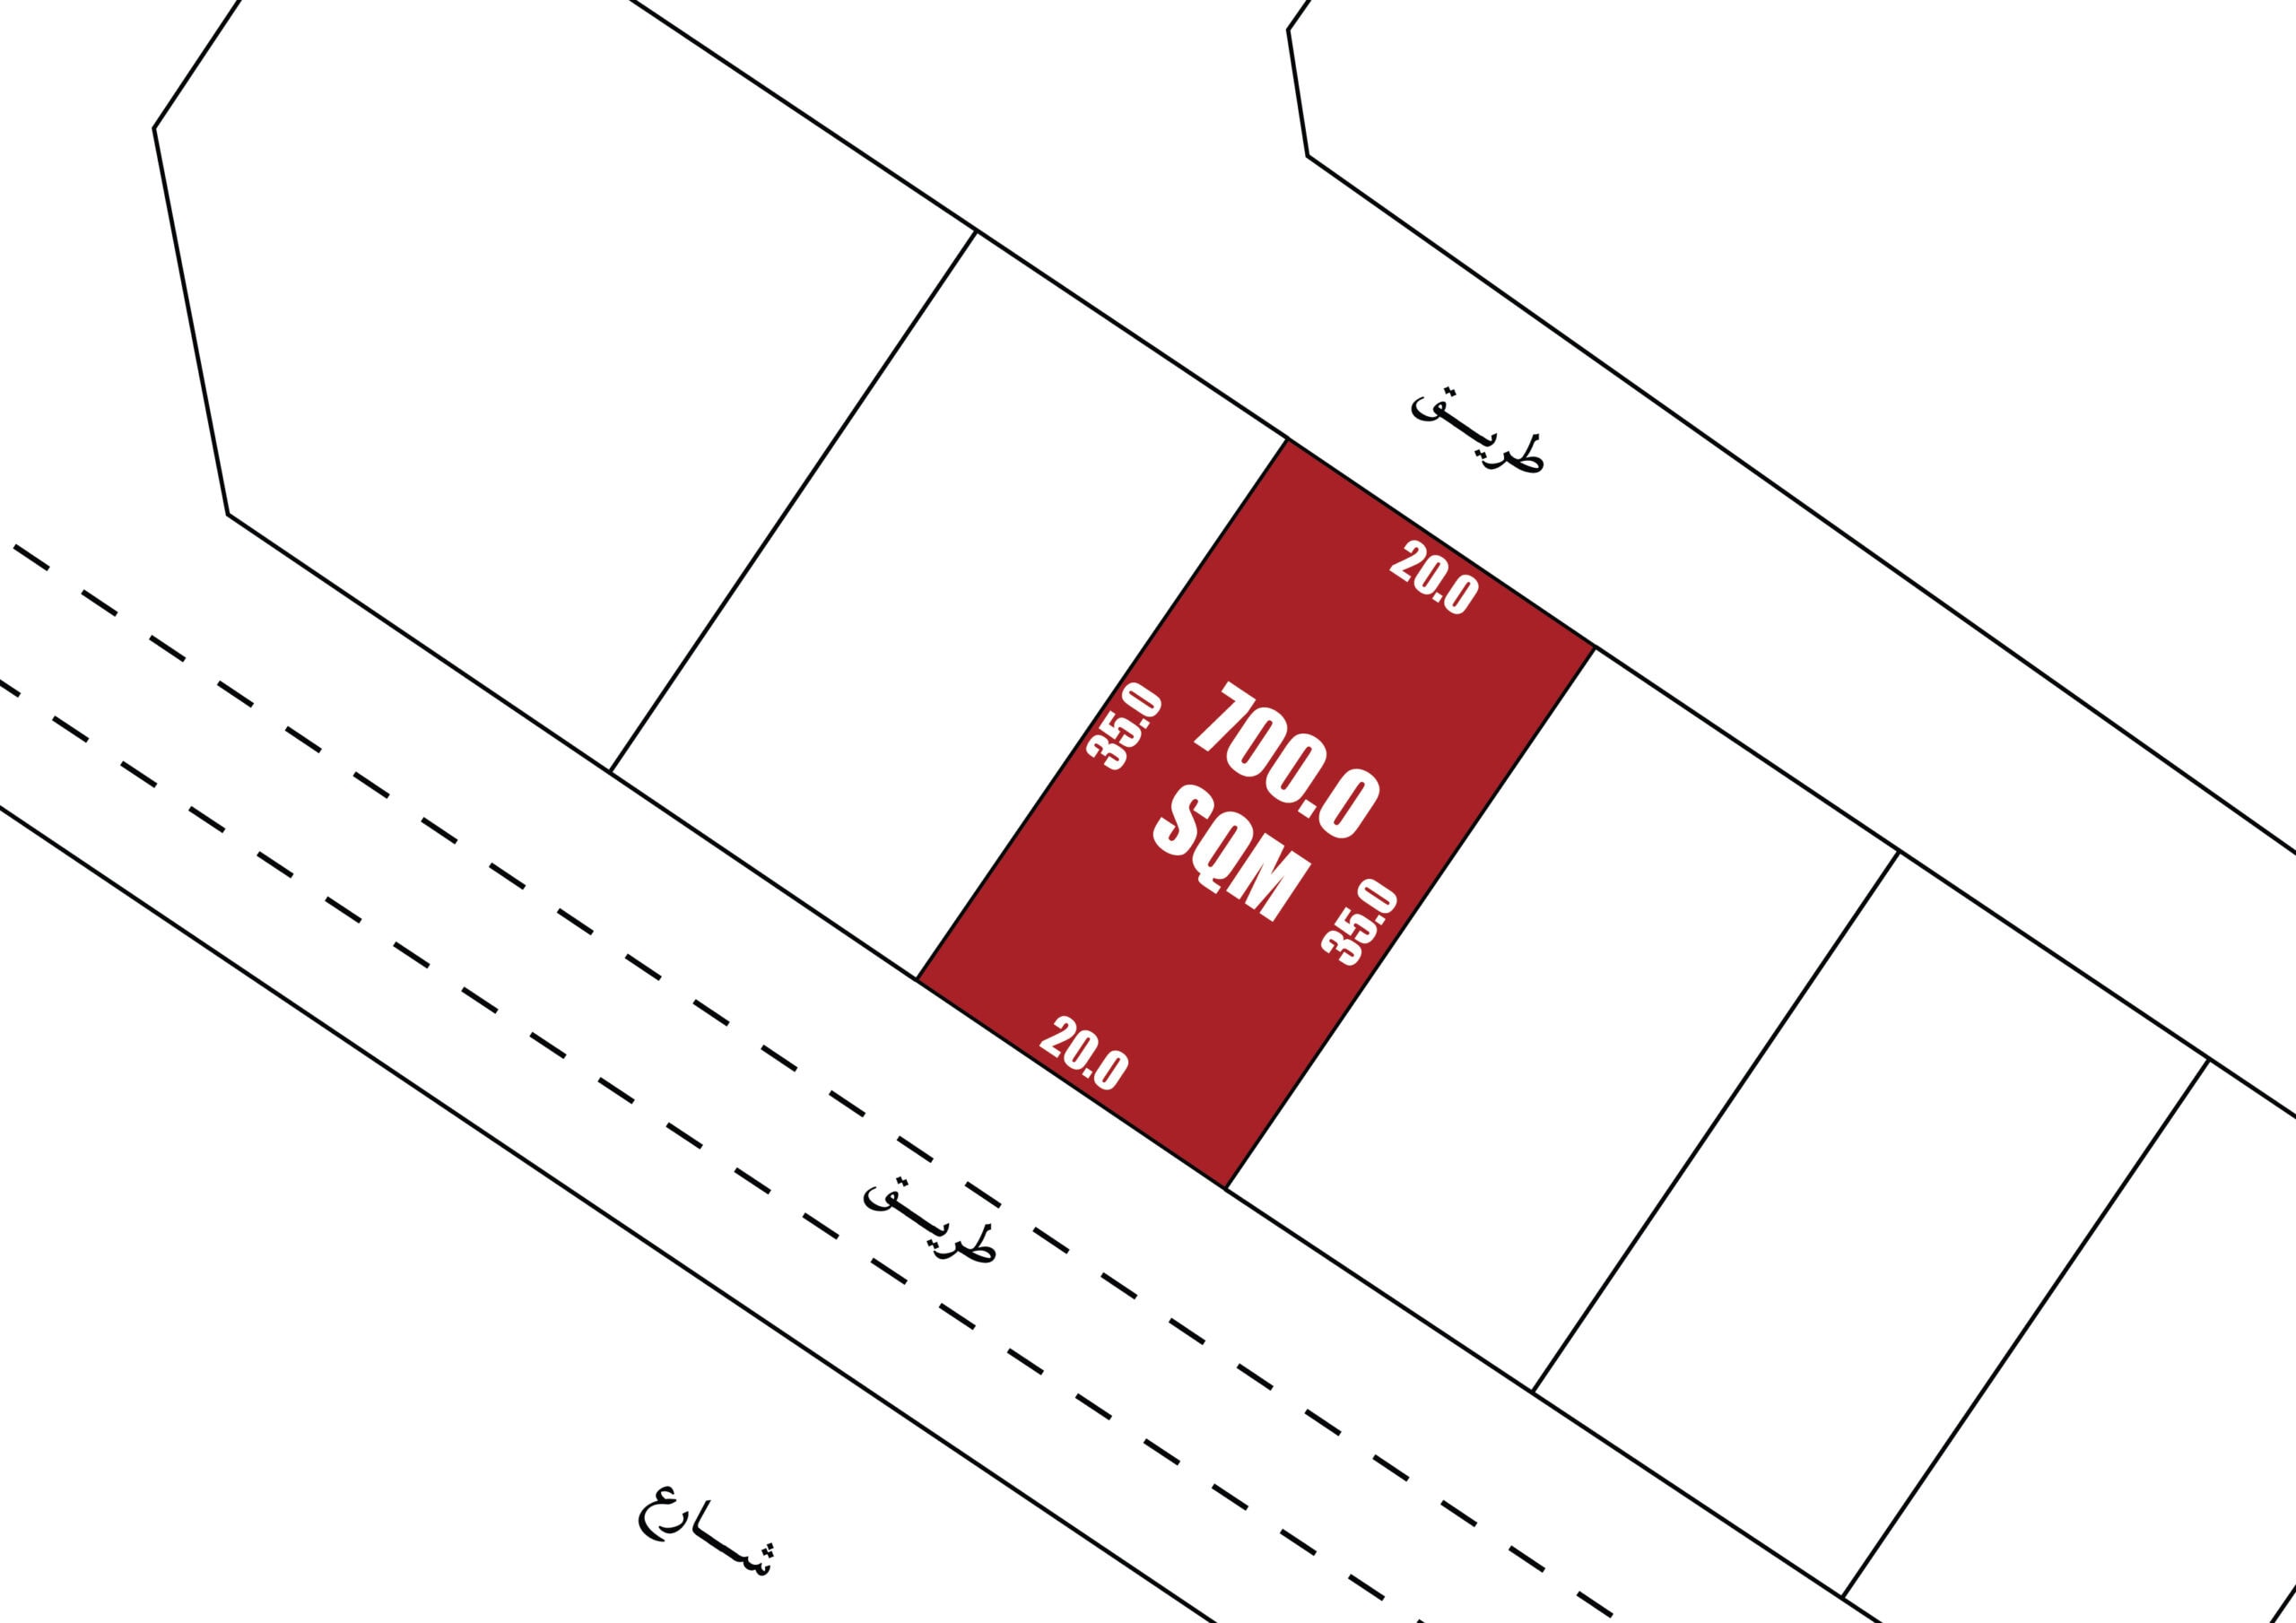 Commercial Land for Sale in Diyar Al Muharraq | 700 SQM